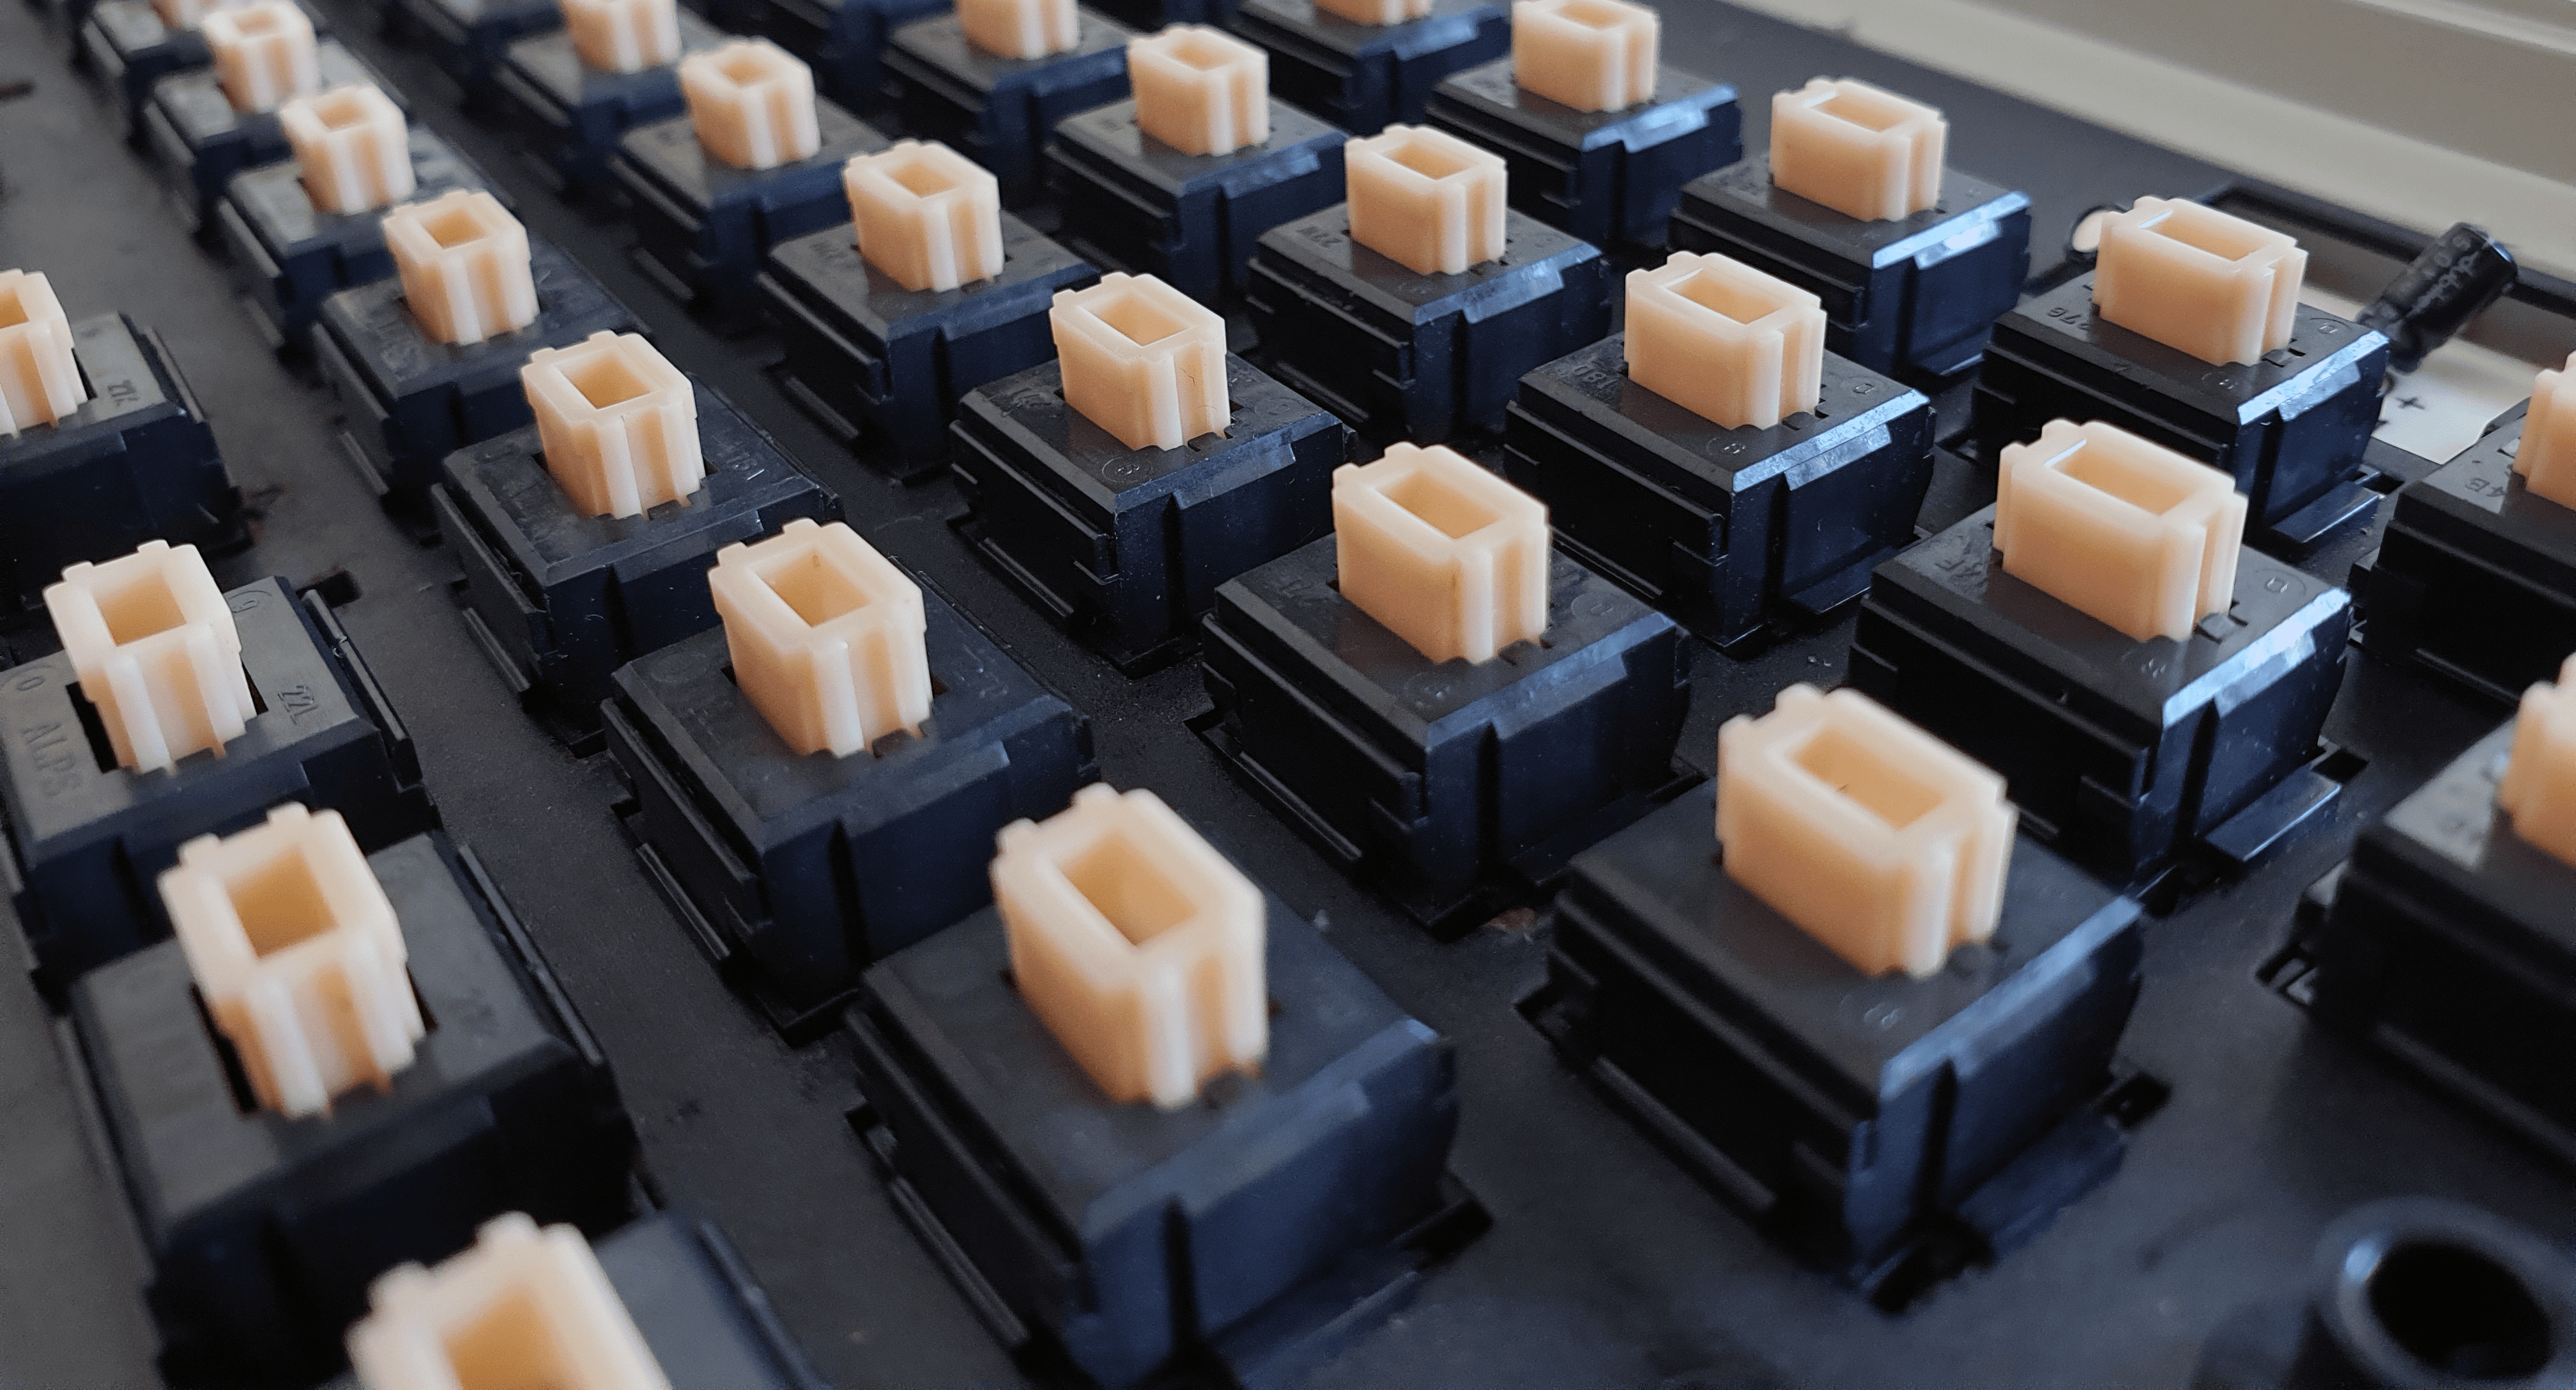 Apple Standard Keyboard, click-modded